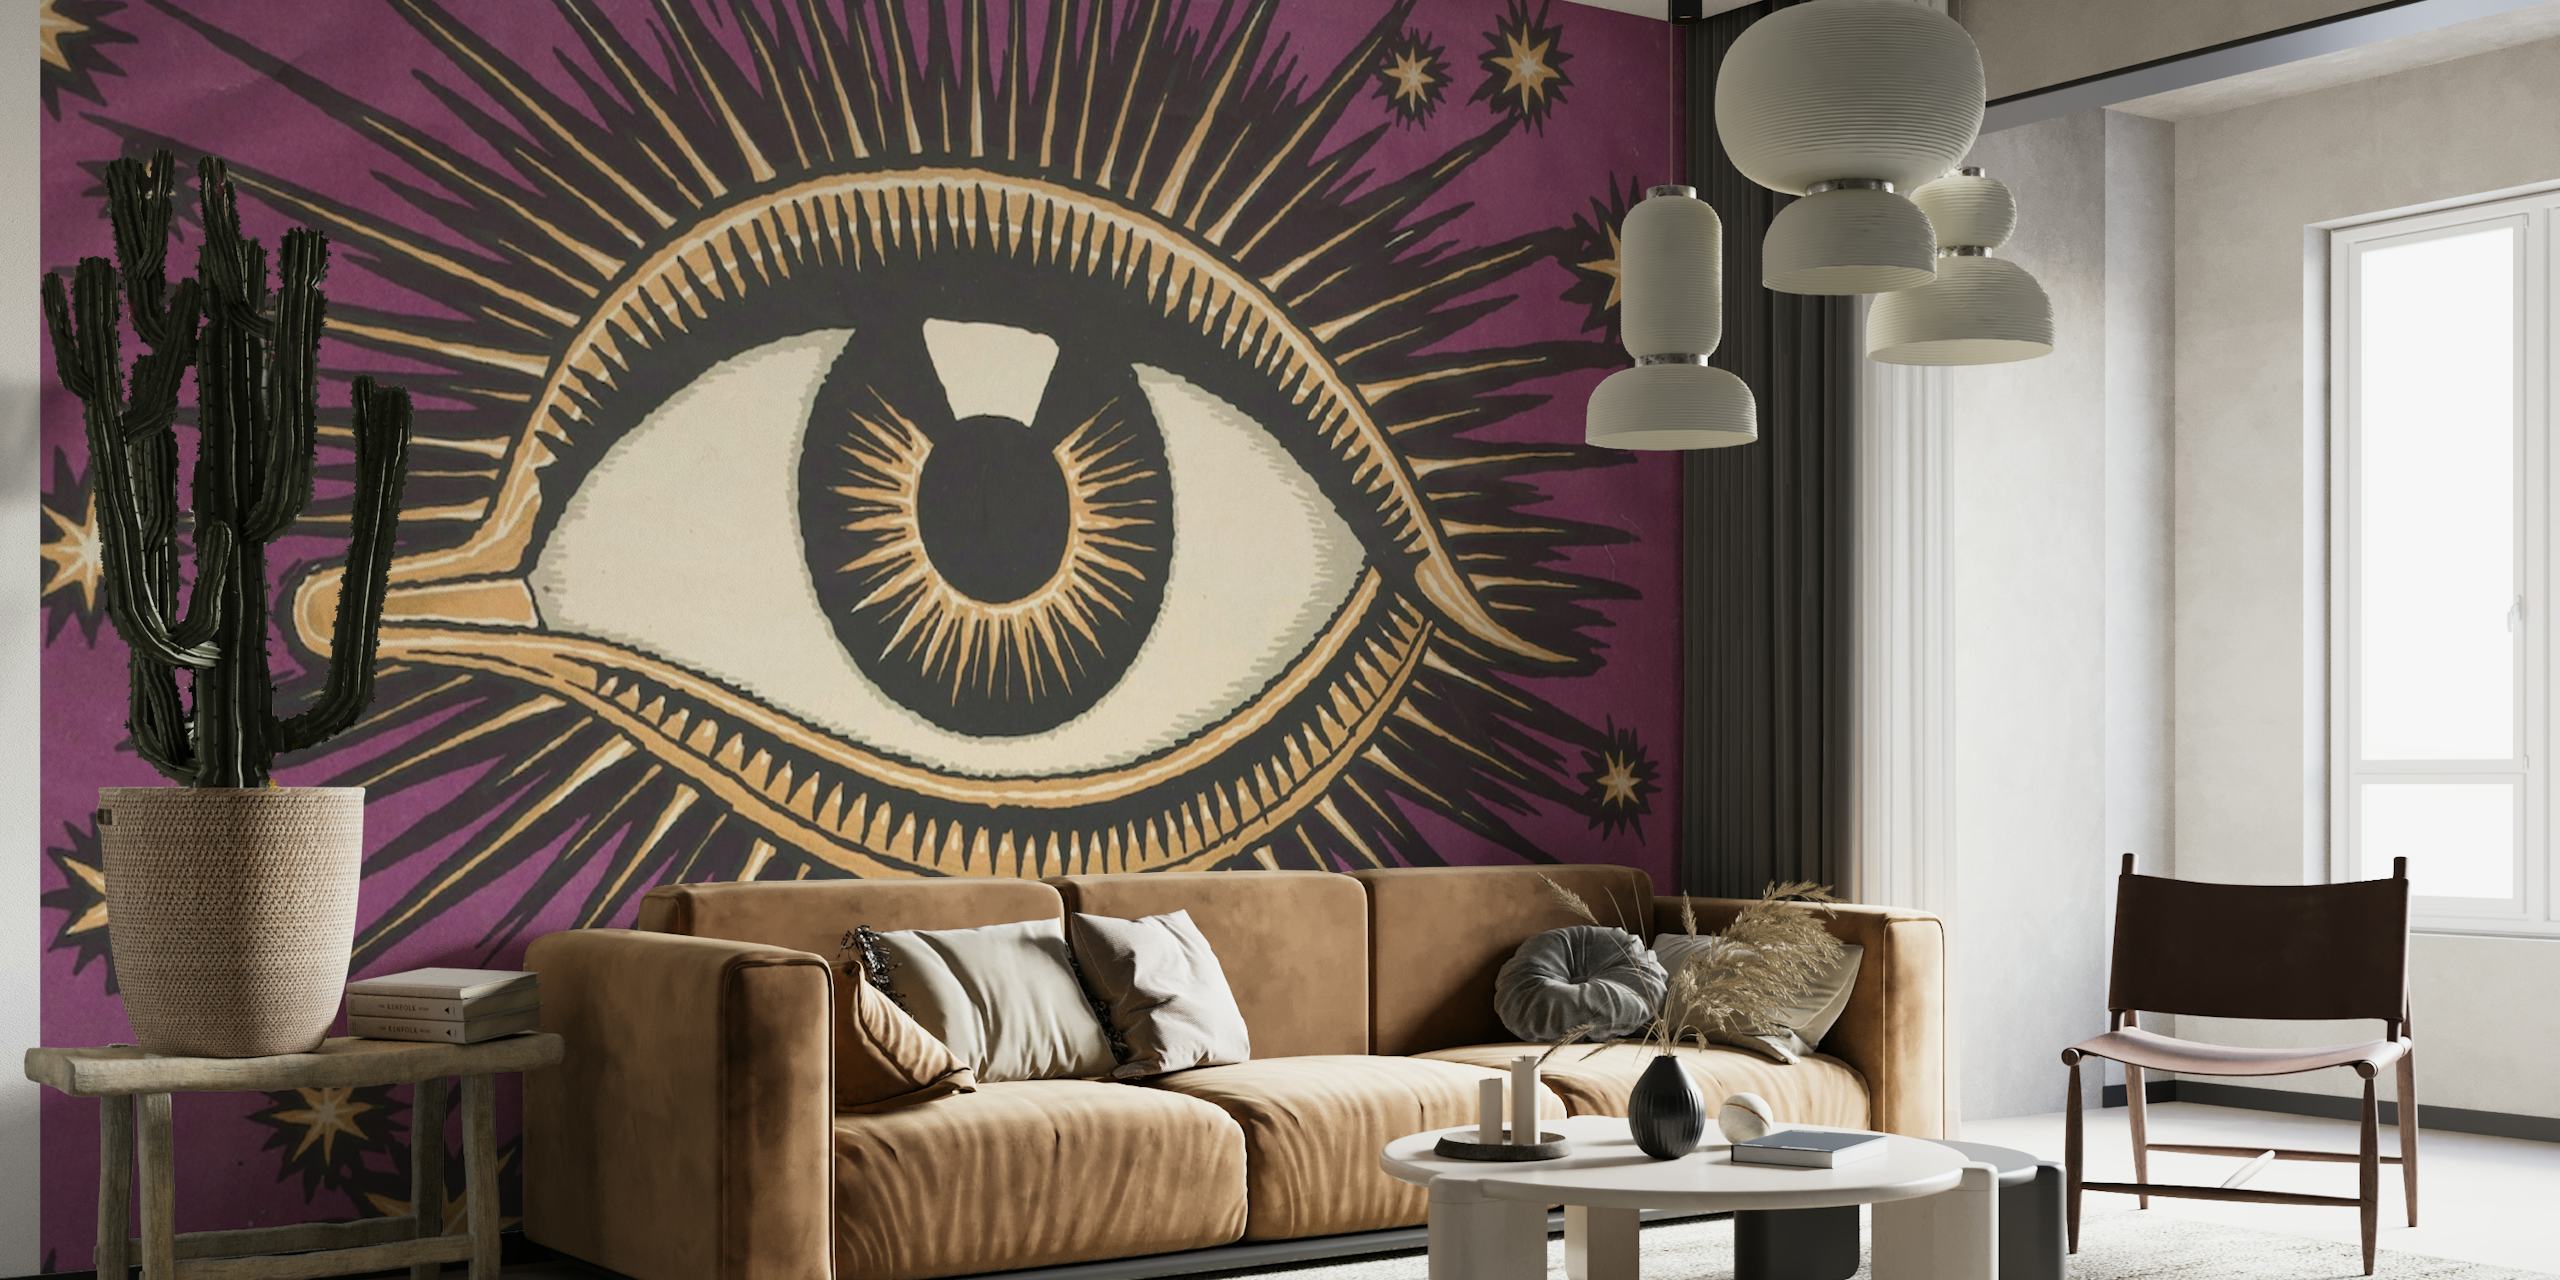 Fototapeta All Seeing Eye przedstawiająca skomplikowany symbol oka z gwiazdami na fioletowym tle